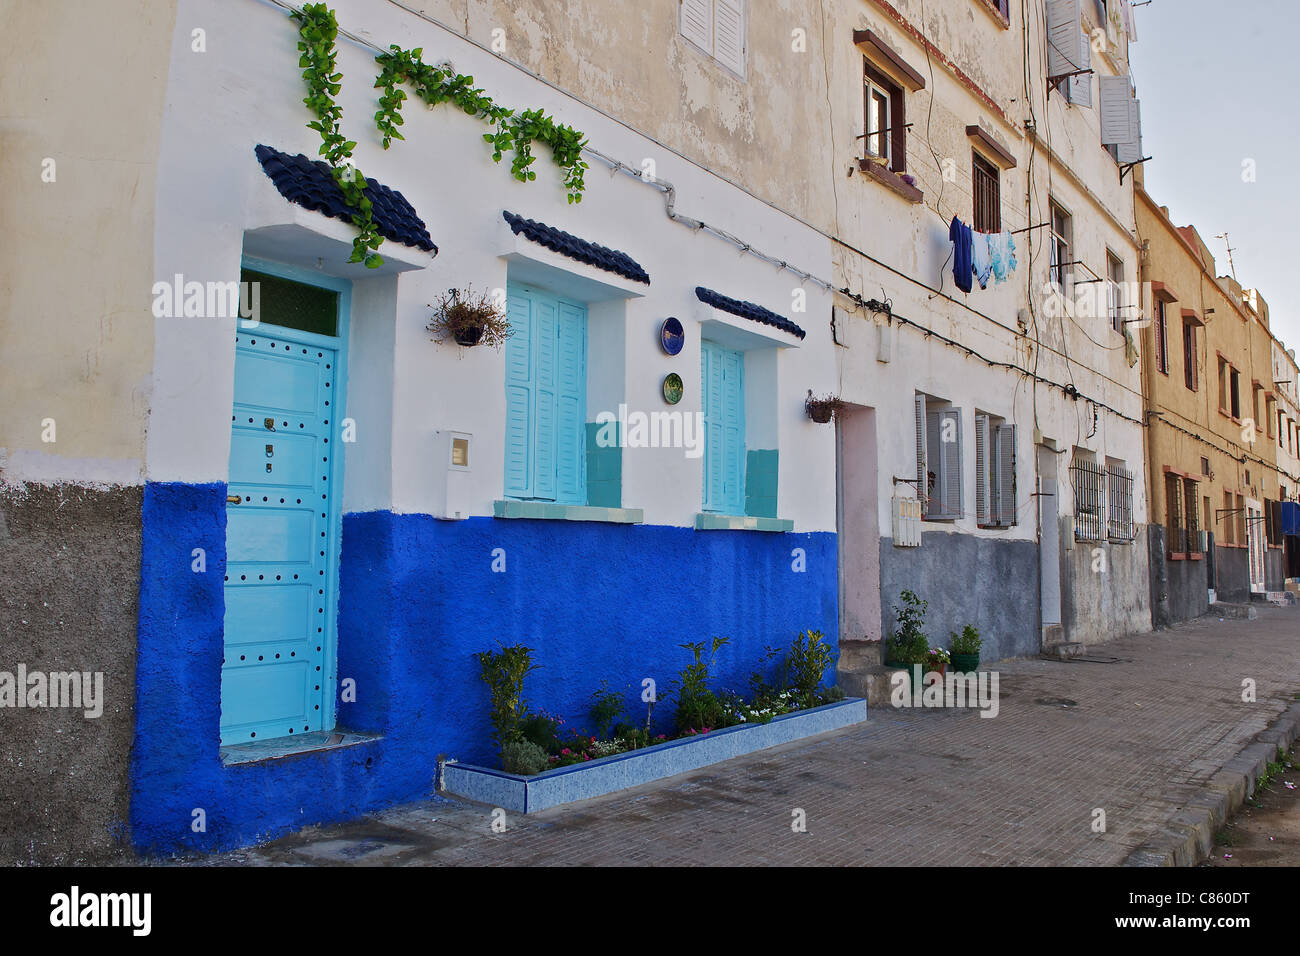 Un lumineux et coloré peint bleu et blanc chambre/dans une rue terne Banque D'Images